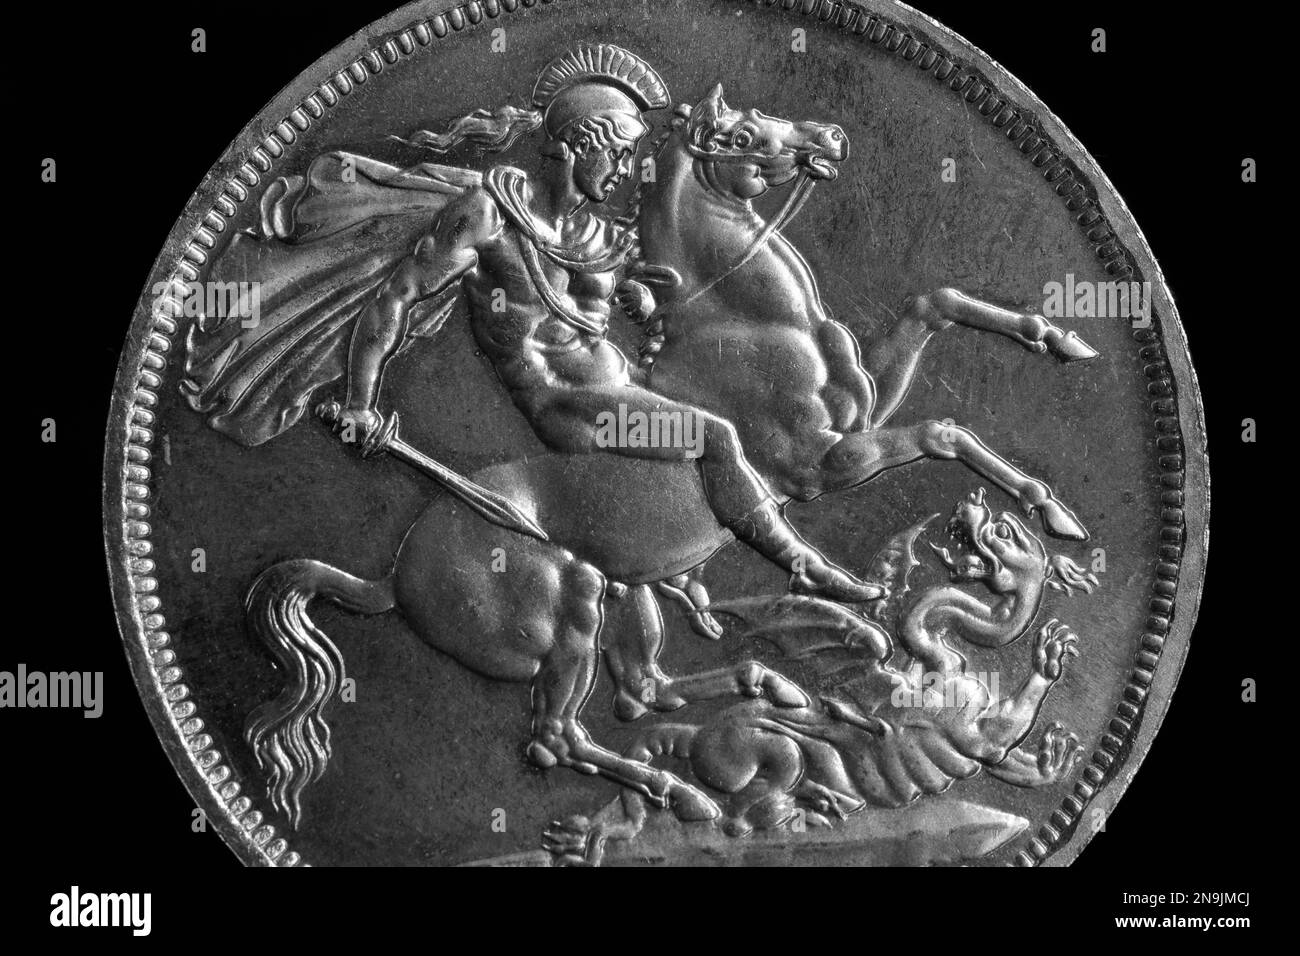 Pièces De Monnaie De La Russie St George Tuant Le Dragon Image stock -  Image du objet, devise: 71900535